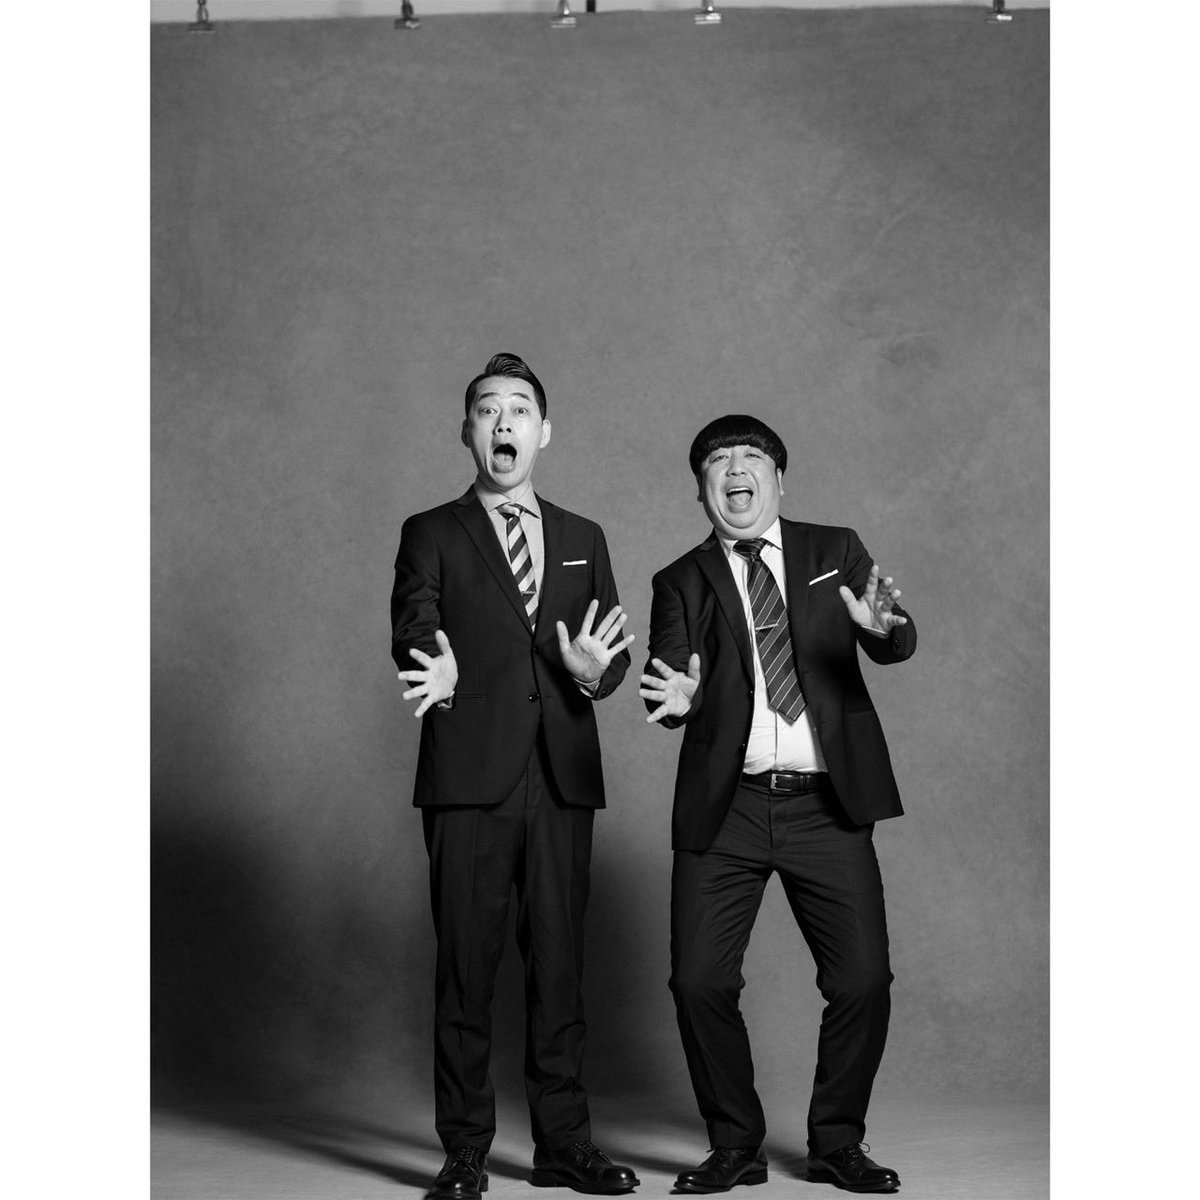 #バナナマン
#設楽統#OsamuShitara
#日村勇紀#YukiHimura

Portrait by HIRO KIMURA

#HERO3 #シリーズ第3弾
#comingsoon
#88JAPANESEMEN
#hirokimura
#photoexhibition
#代官山ヒルサイドフォーラム
#現代を代表する日本人男性１７６名のポートレート